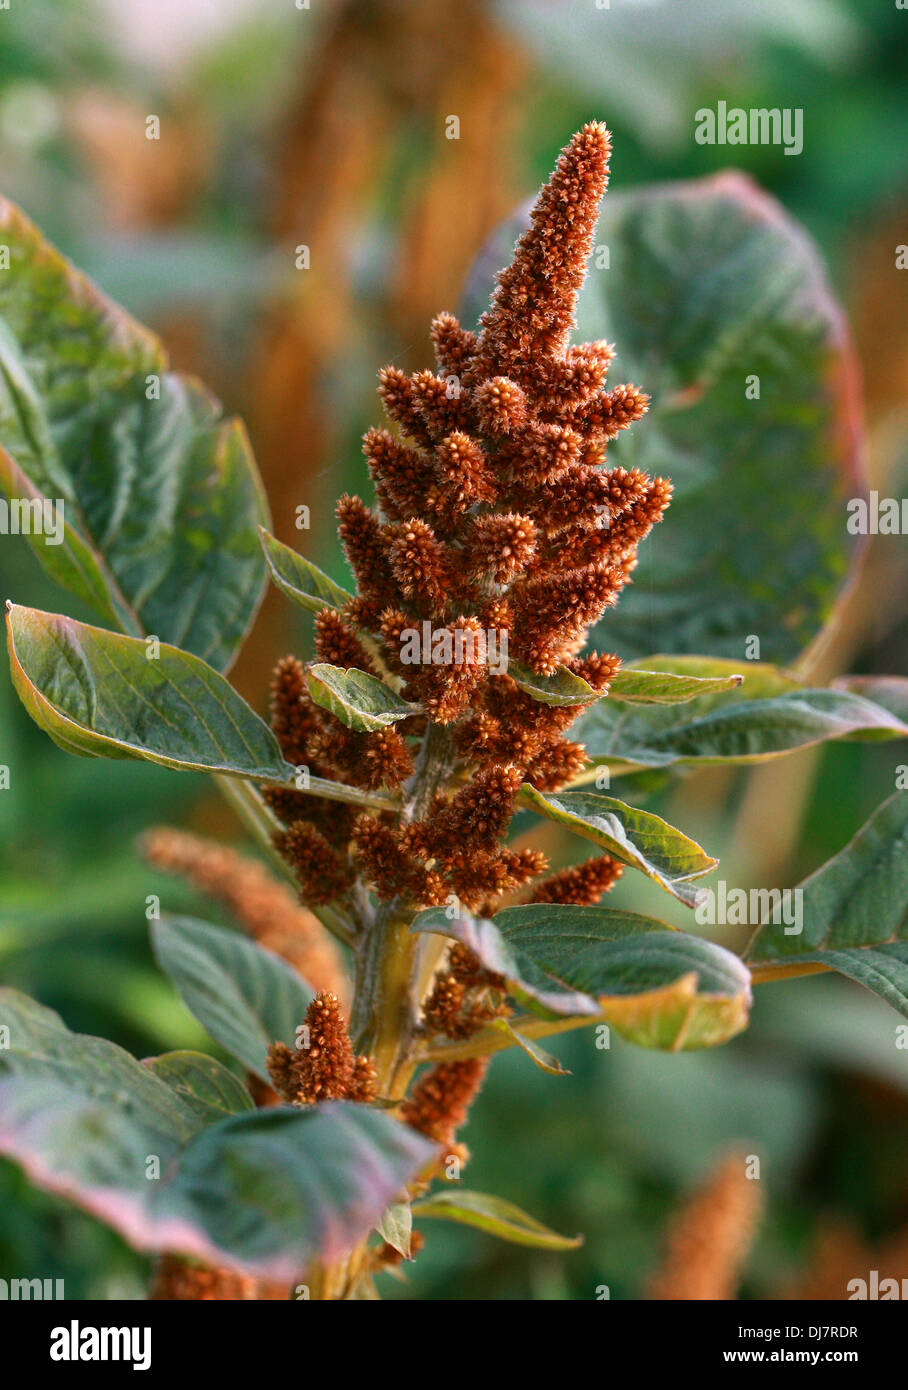 Inca di frumento, Amaranthus cruentus, Amaranthaceae. Messico america centrale. Foto Stock